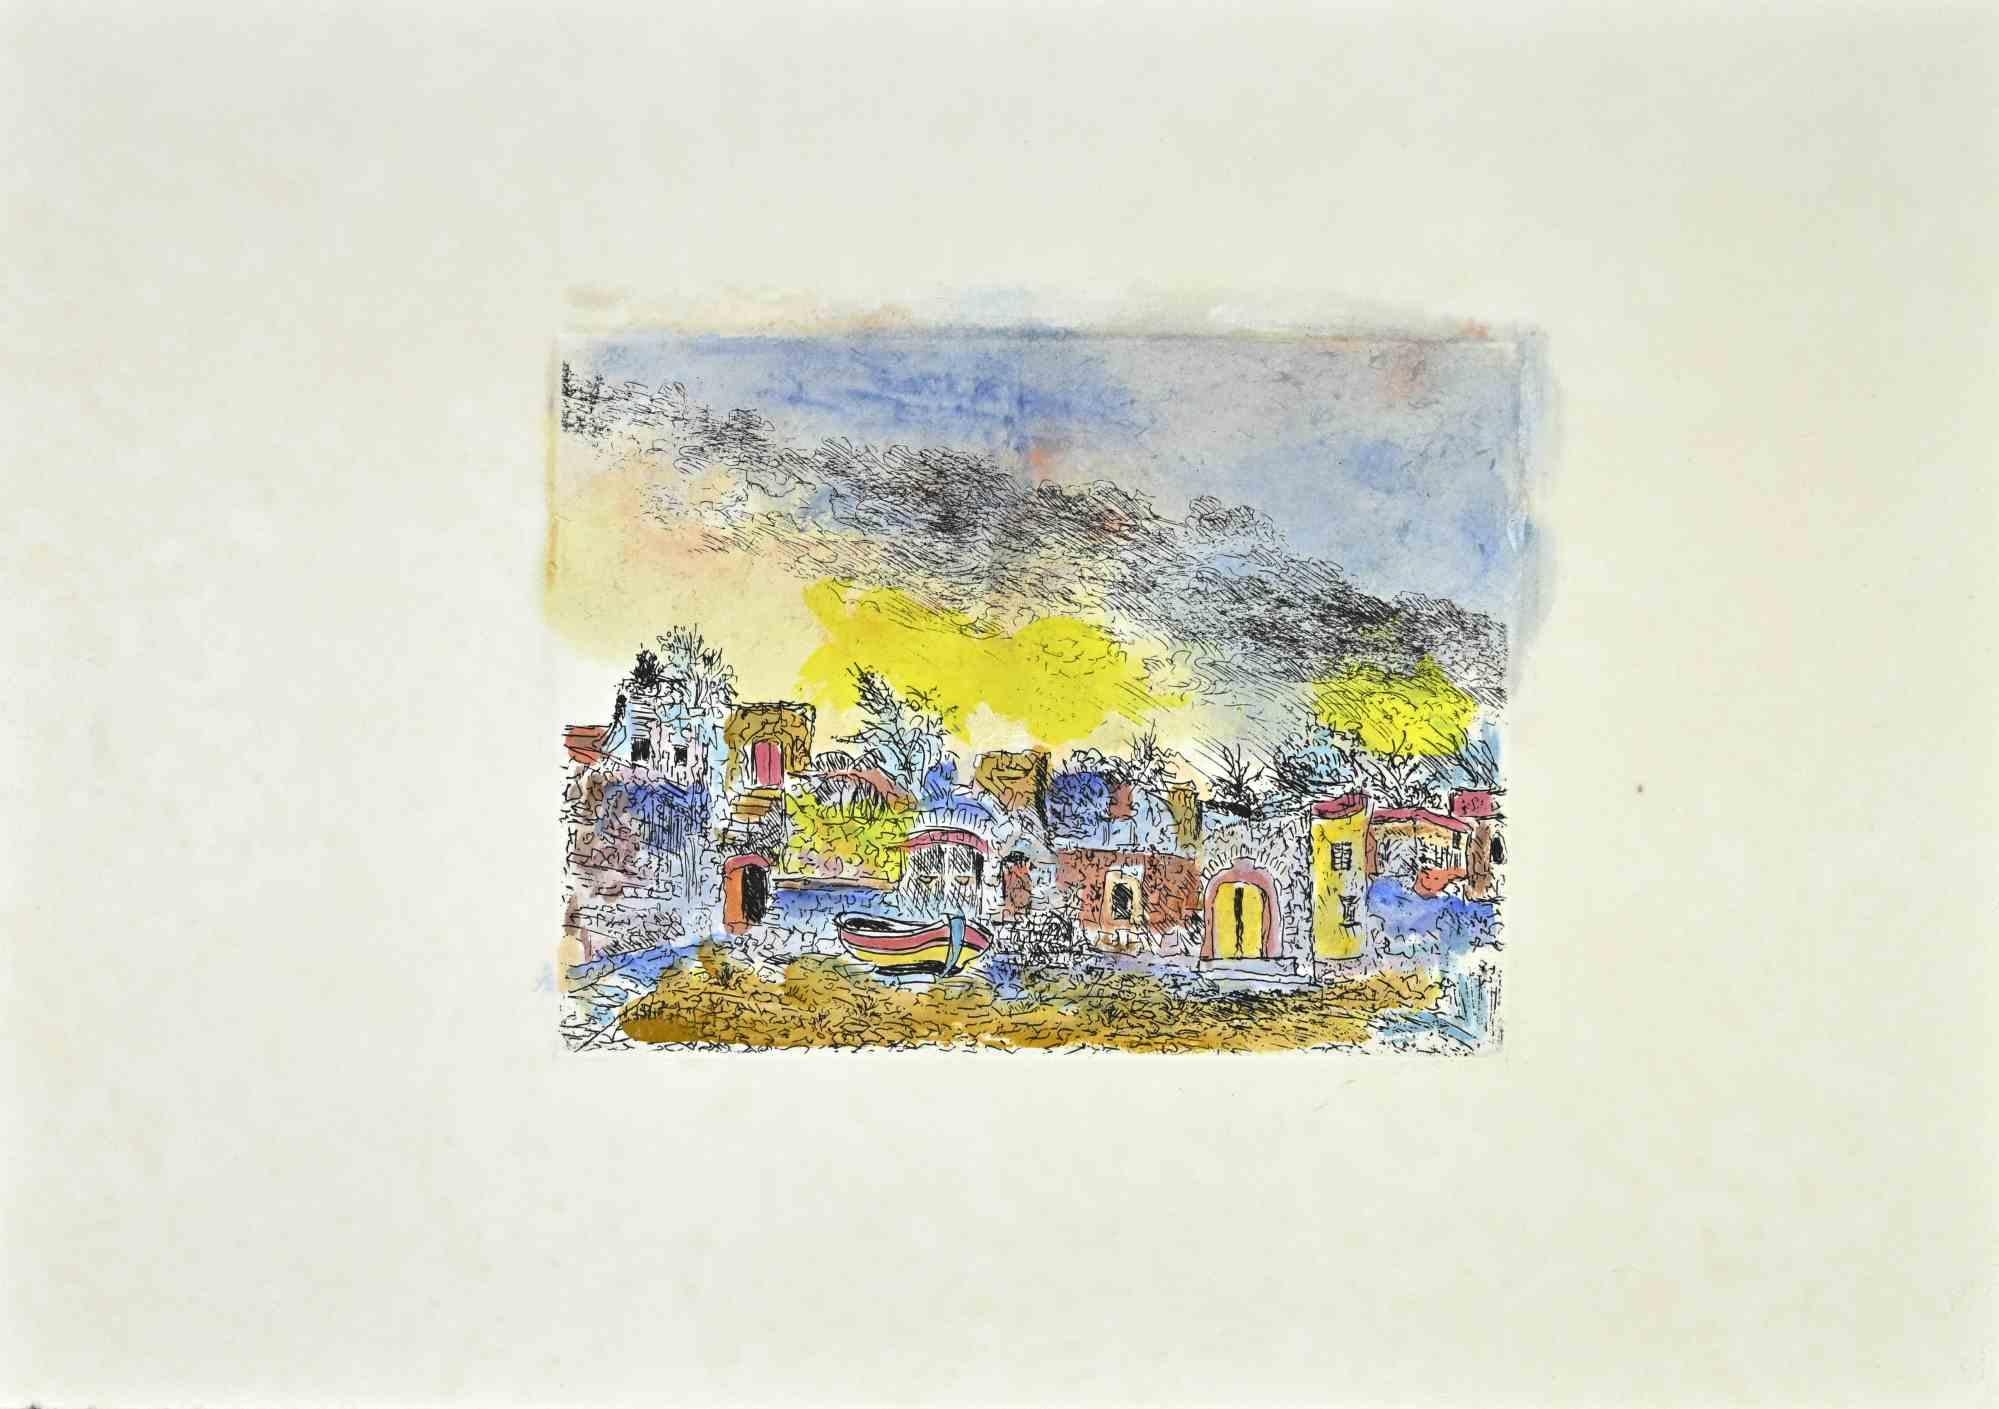 Scilla Landscape est une œuvre d'art réalisée par Giovanni Omiccioli (25 février 1901 - 1er mars 1975).

Gravure originale en couleurs sur carton.

L'artiste veut définir une composition équilibrée, à travers un signe doux et délicat.

Bonnes